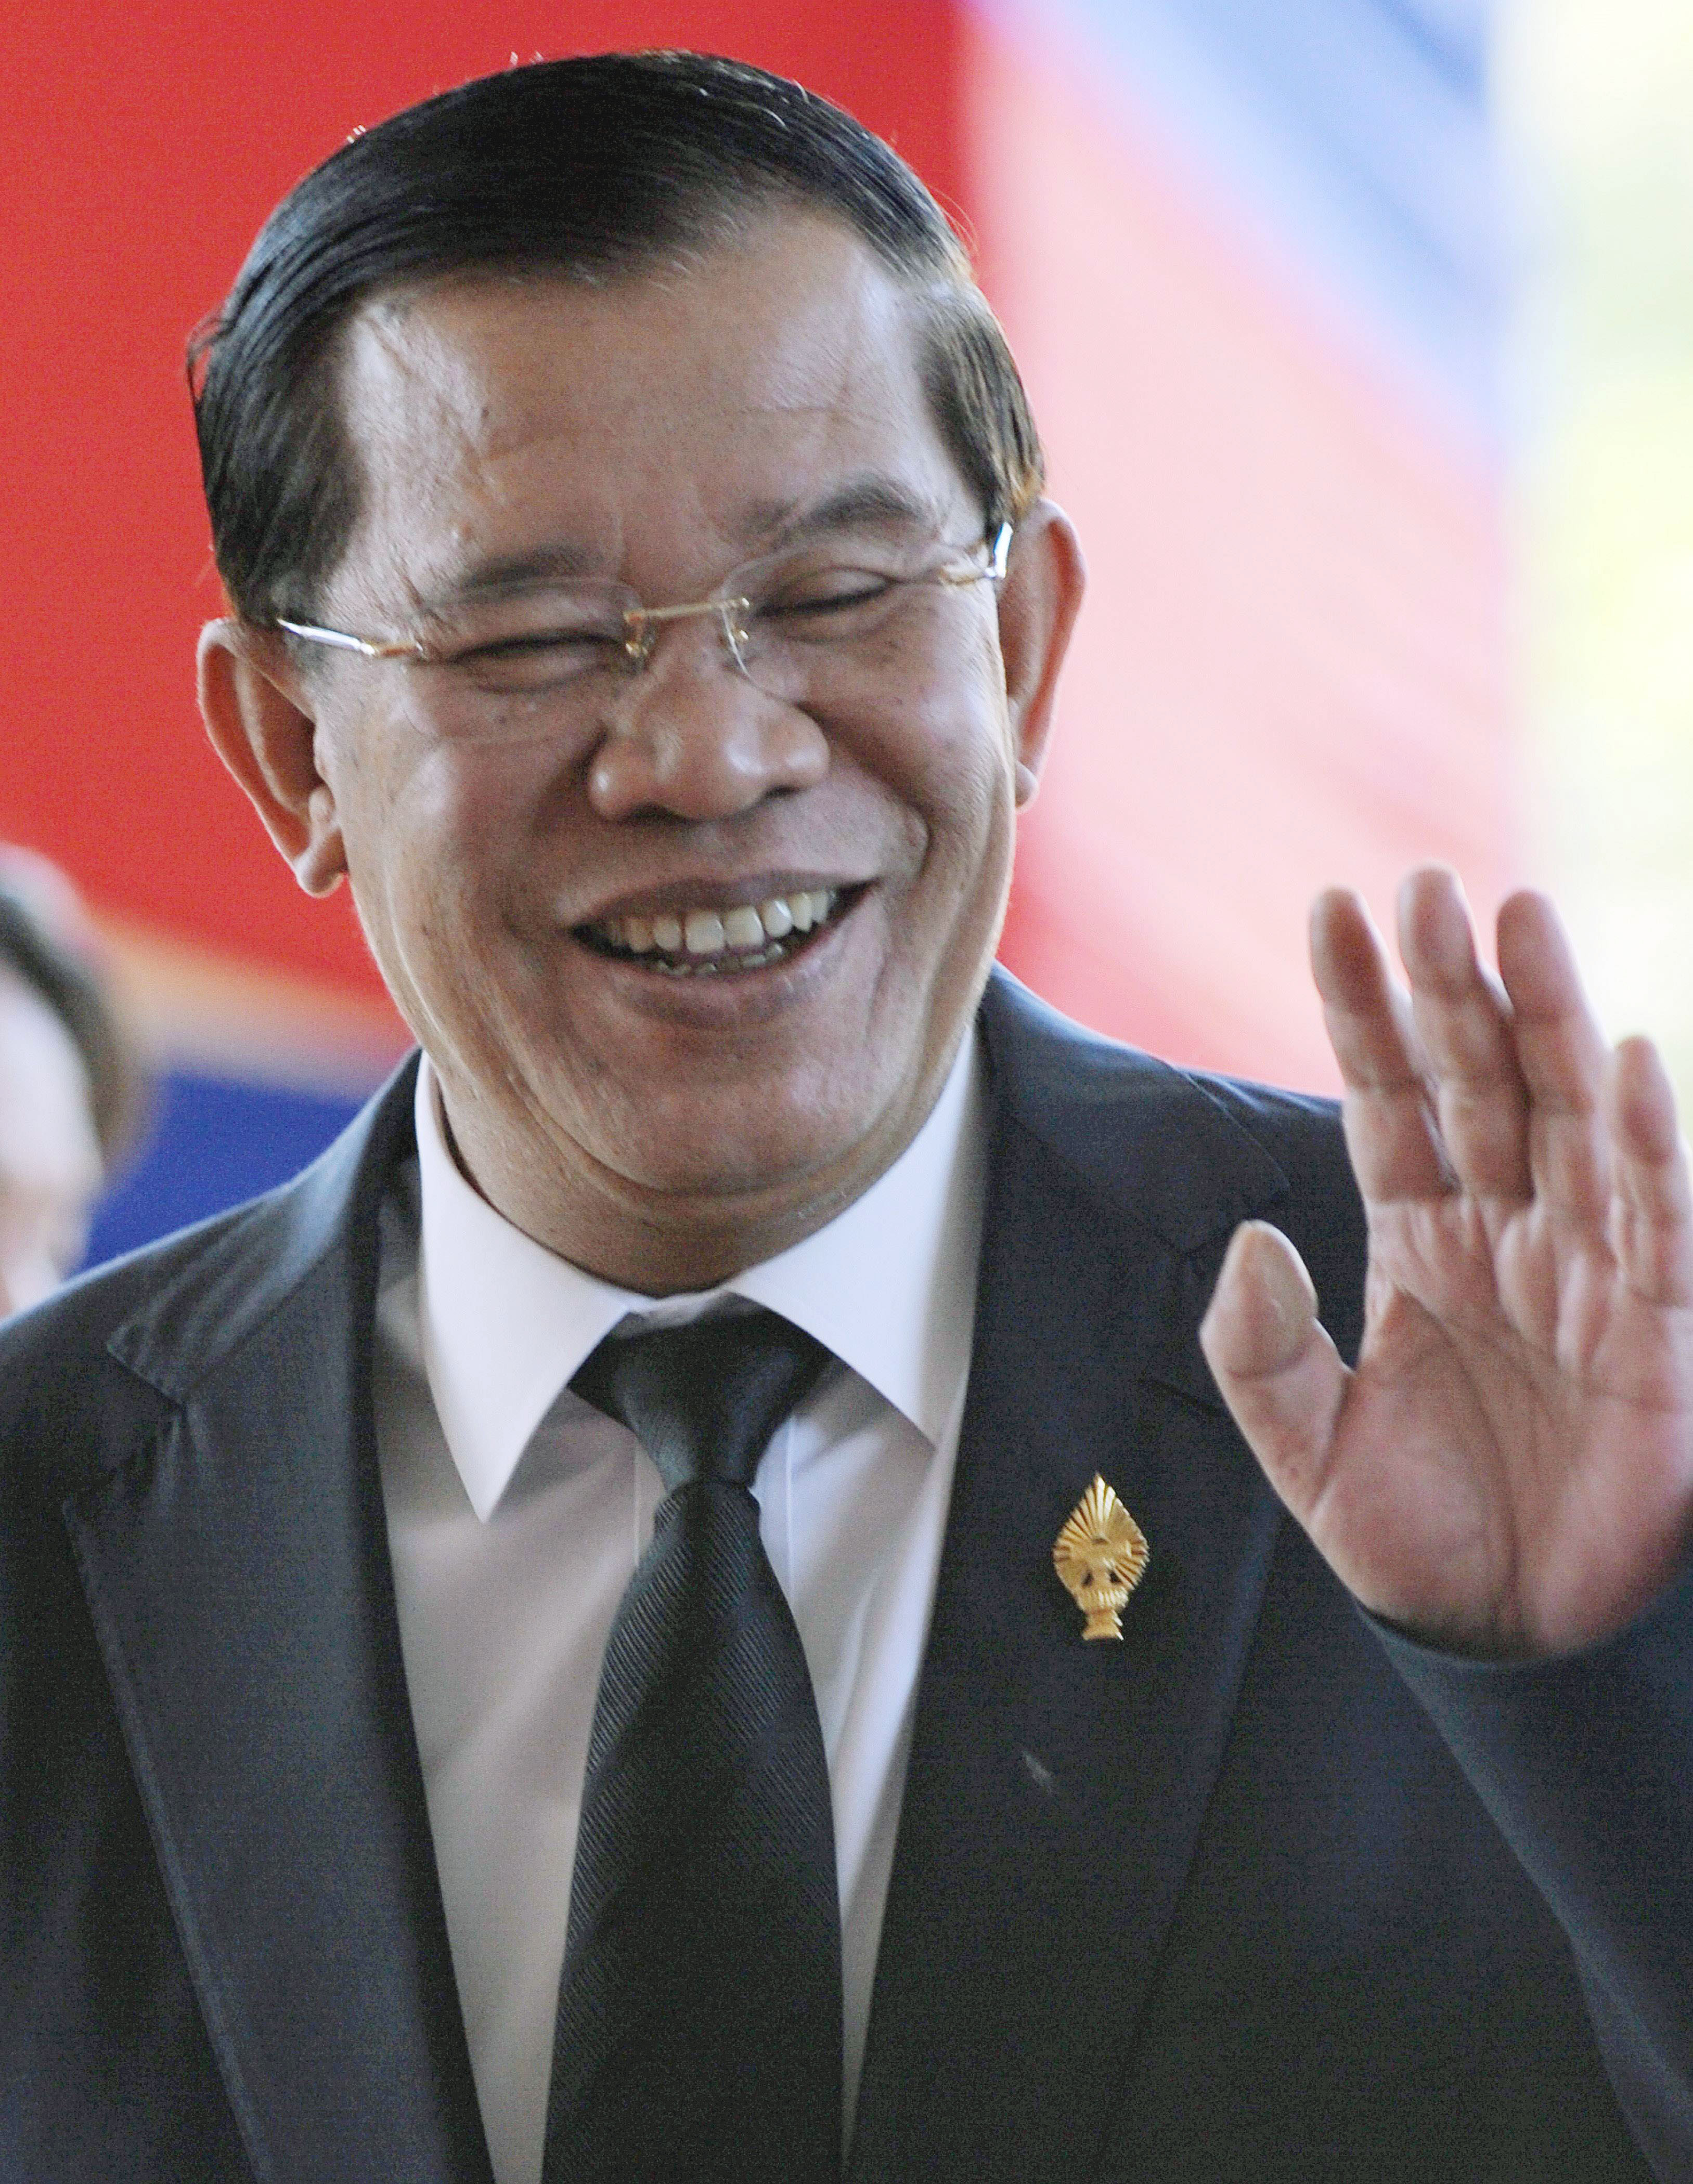 柬埔寨首相:欢迎台湾来投资 但禁止升国旗